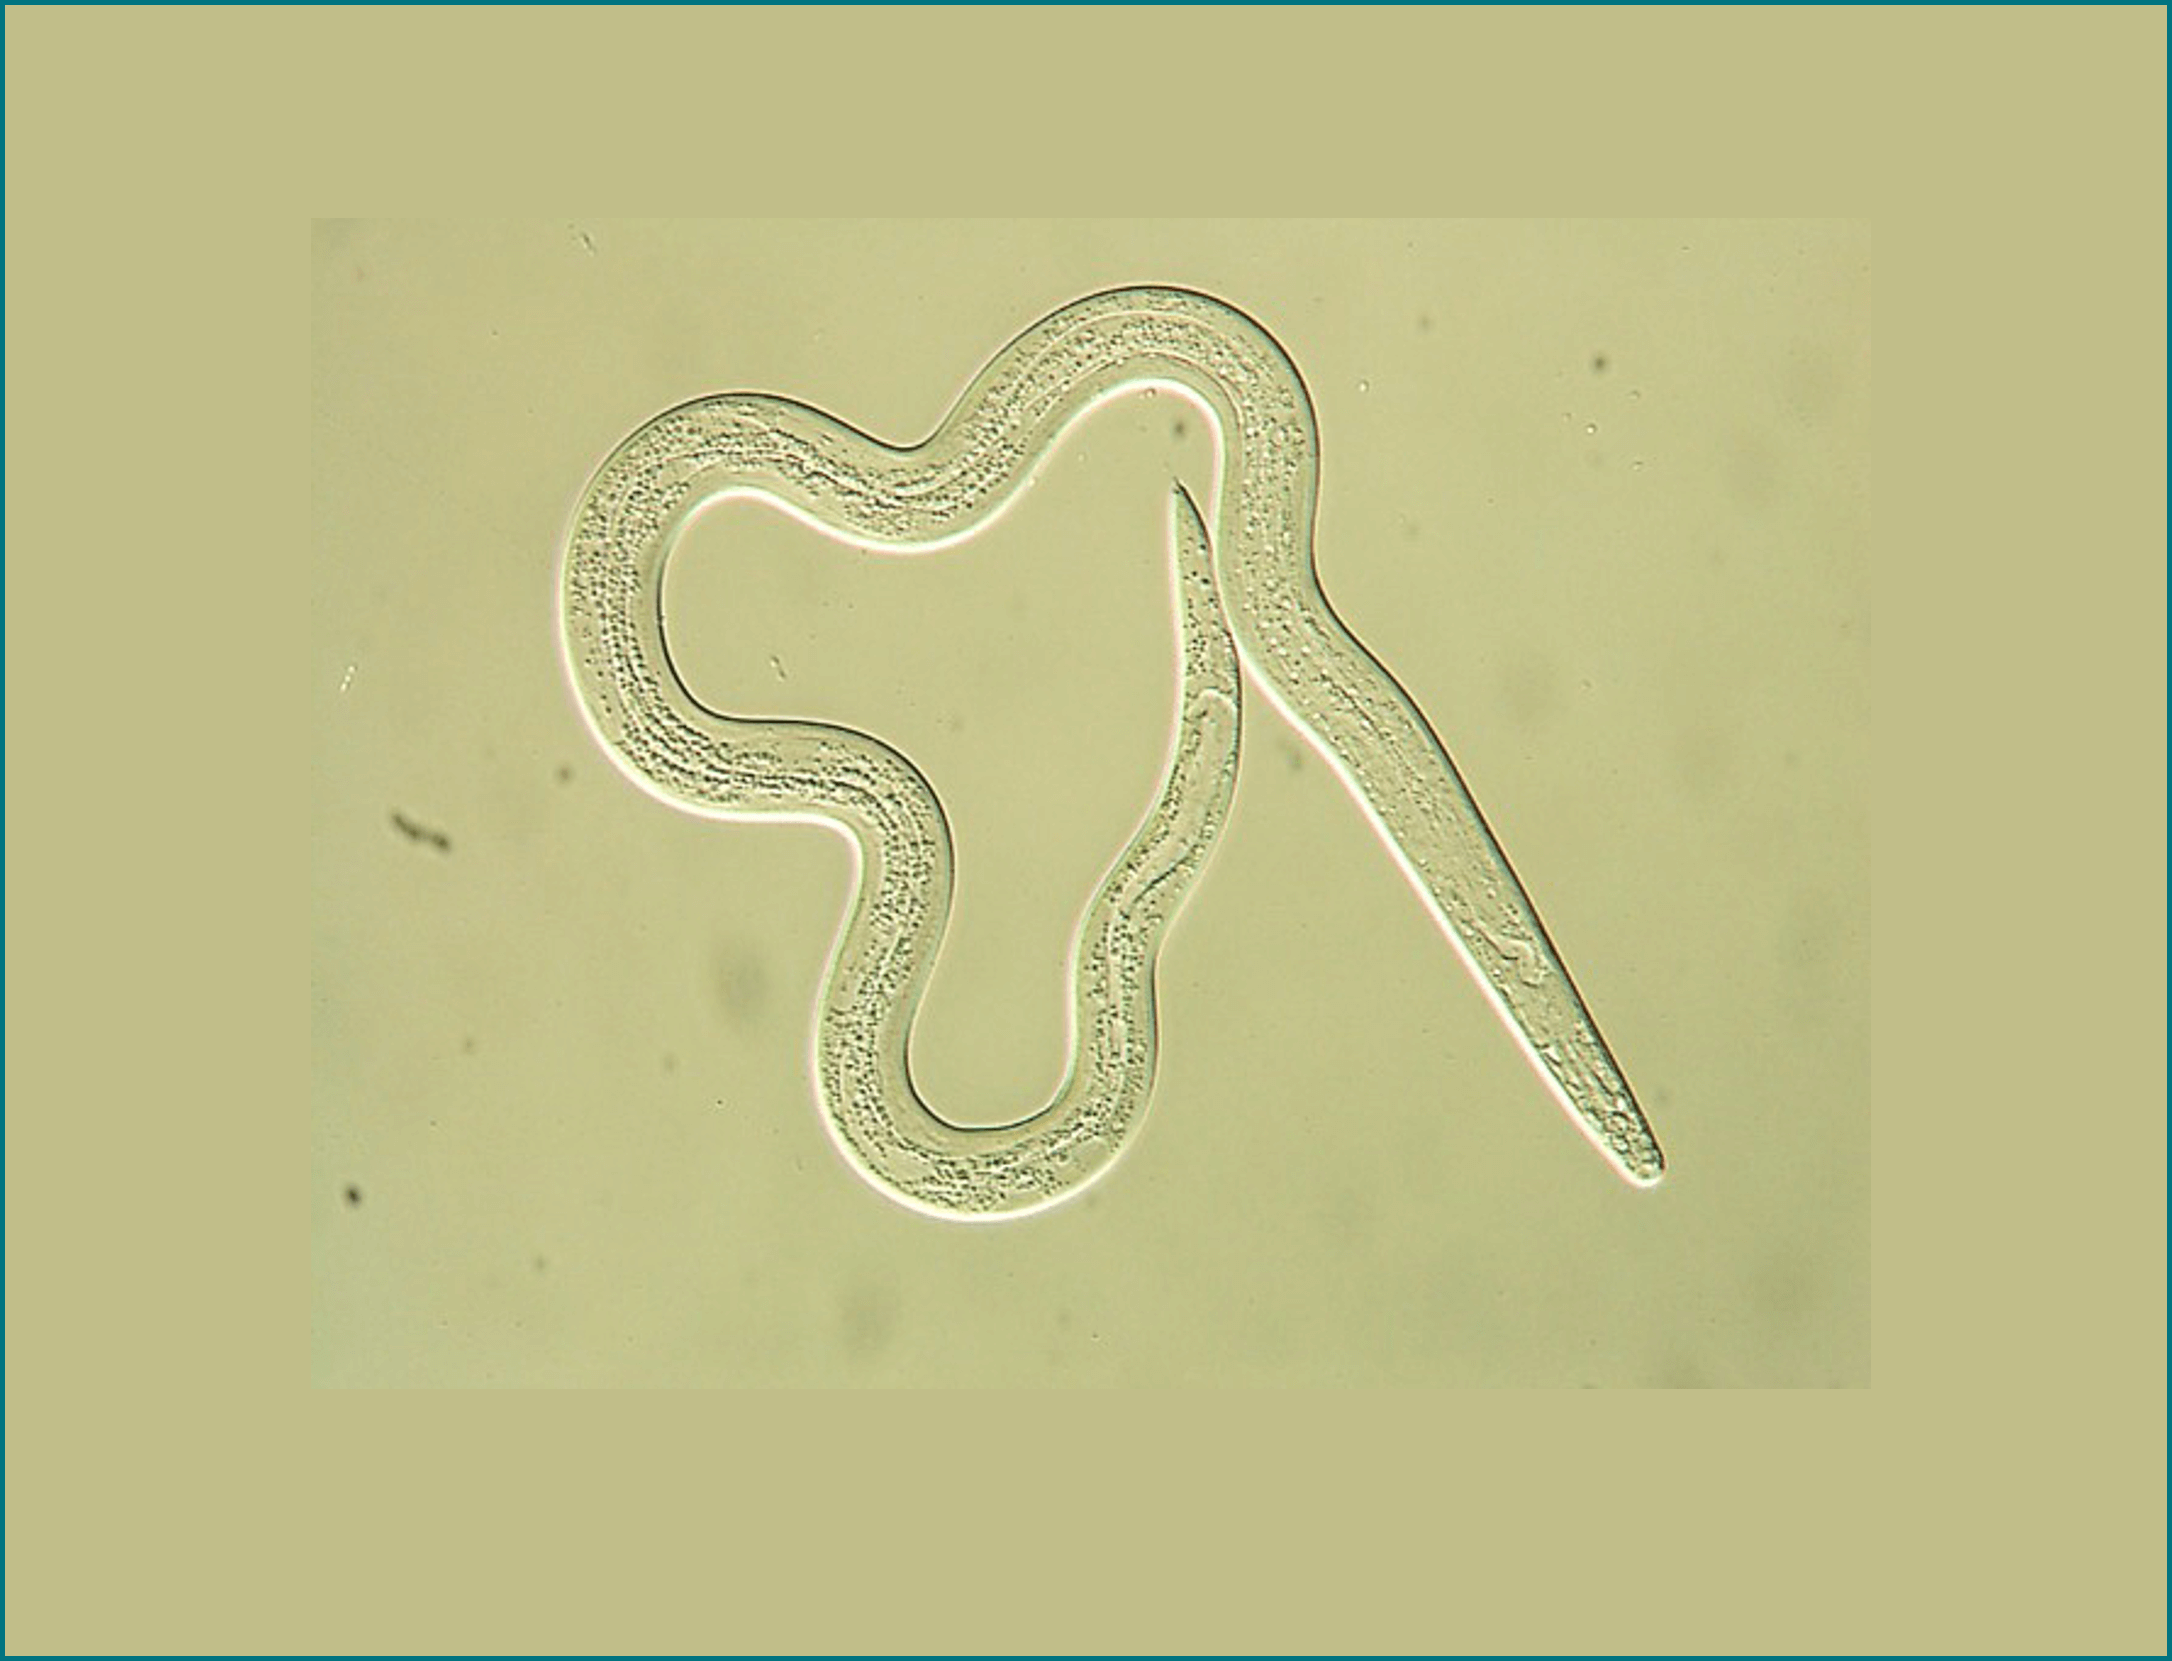 Microscope image of a nematode worm